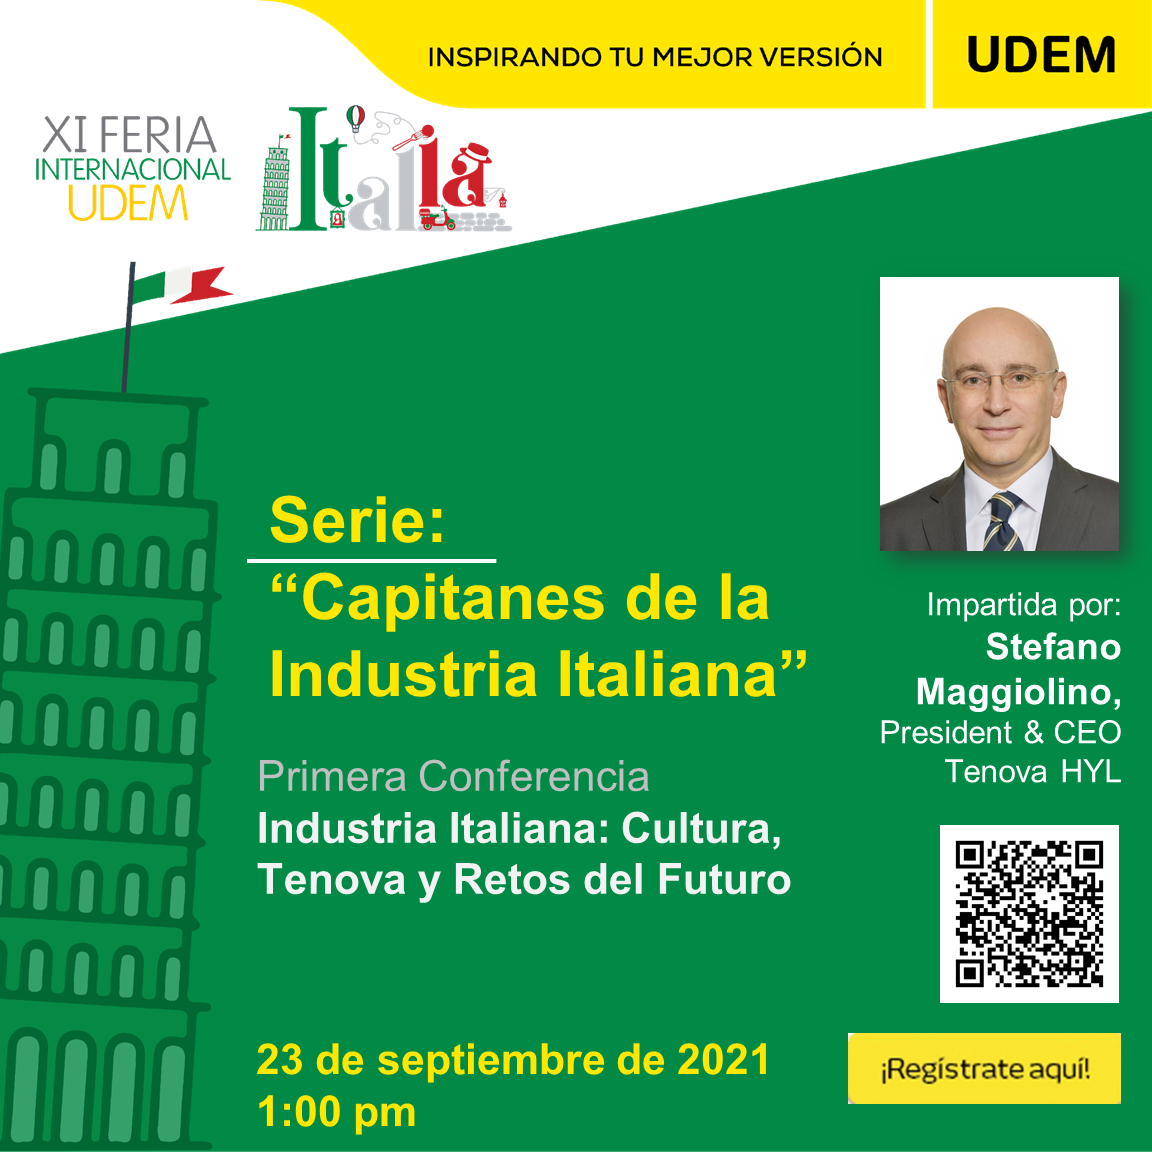 Serie Capitanes de la Industria Italiana con Stefano Maggiolino, Feria Internacional UDEM: Italia